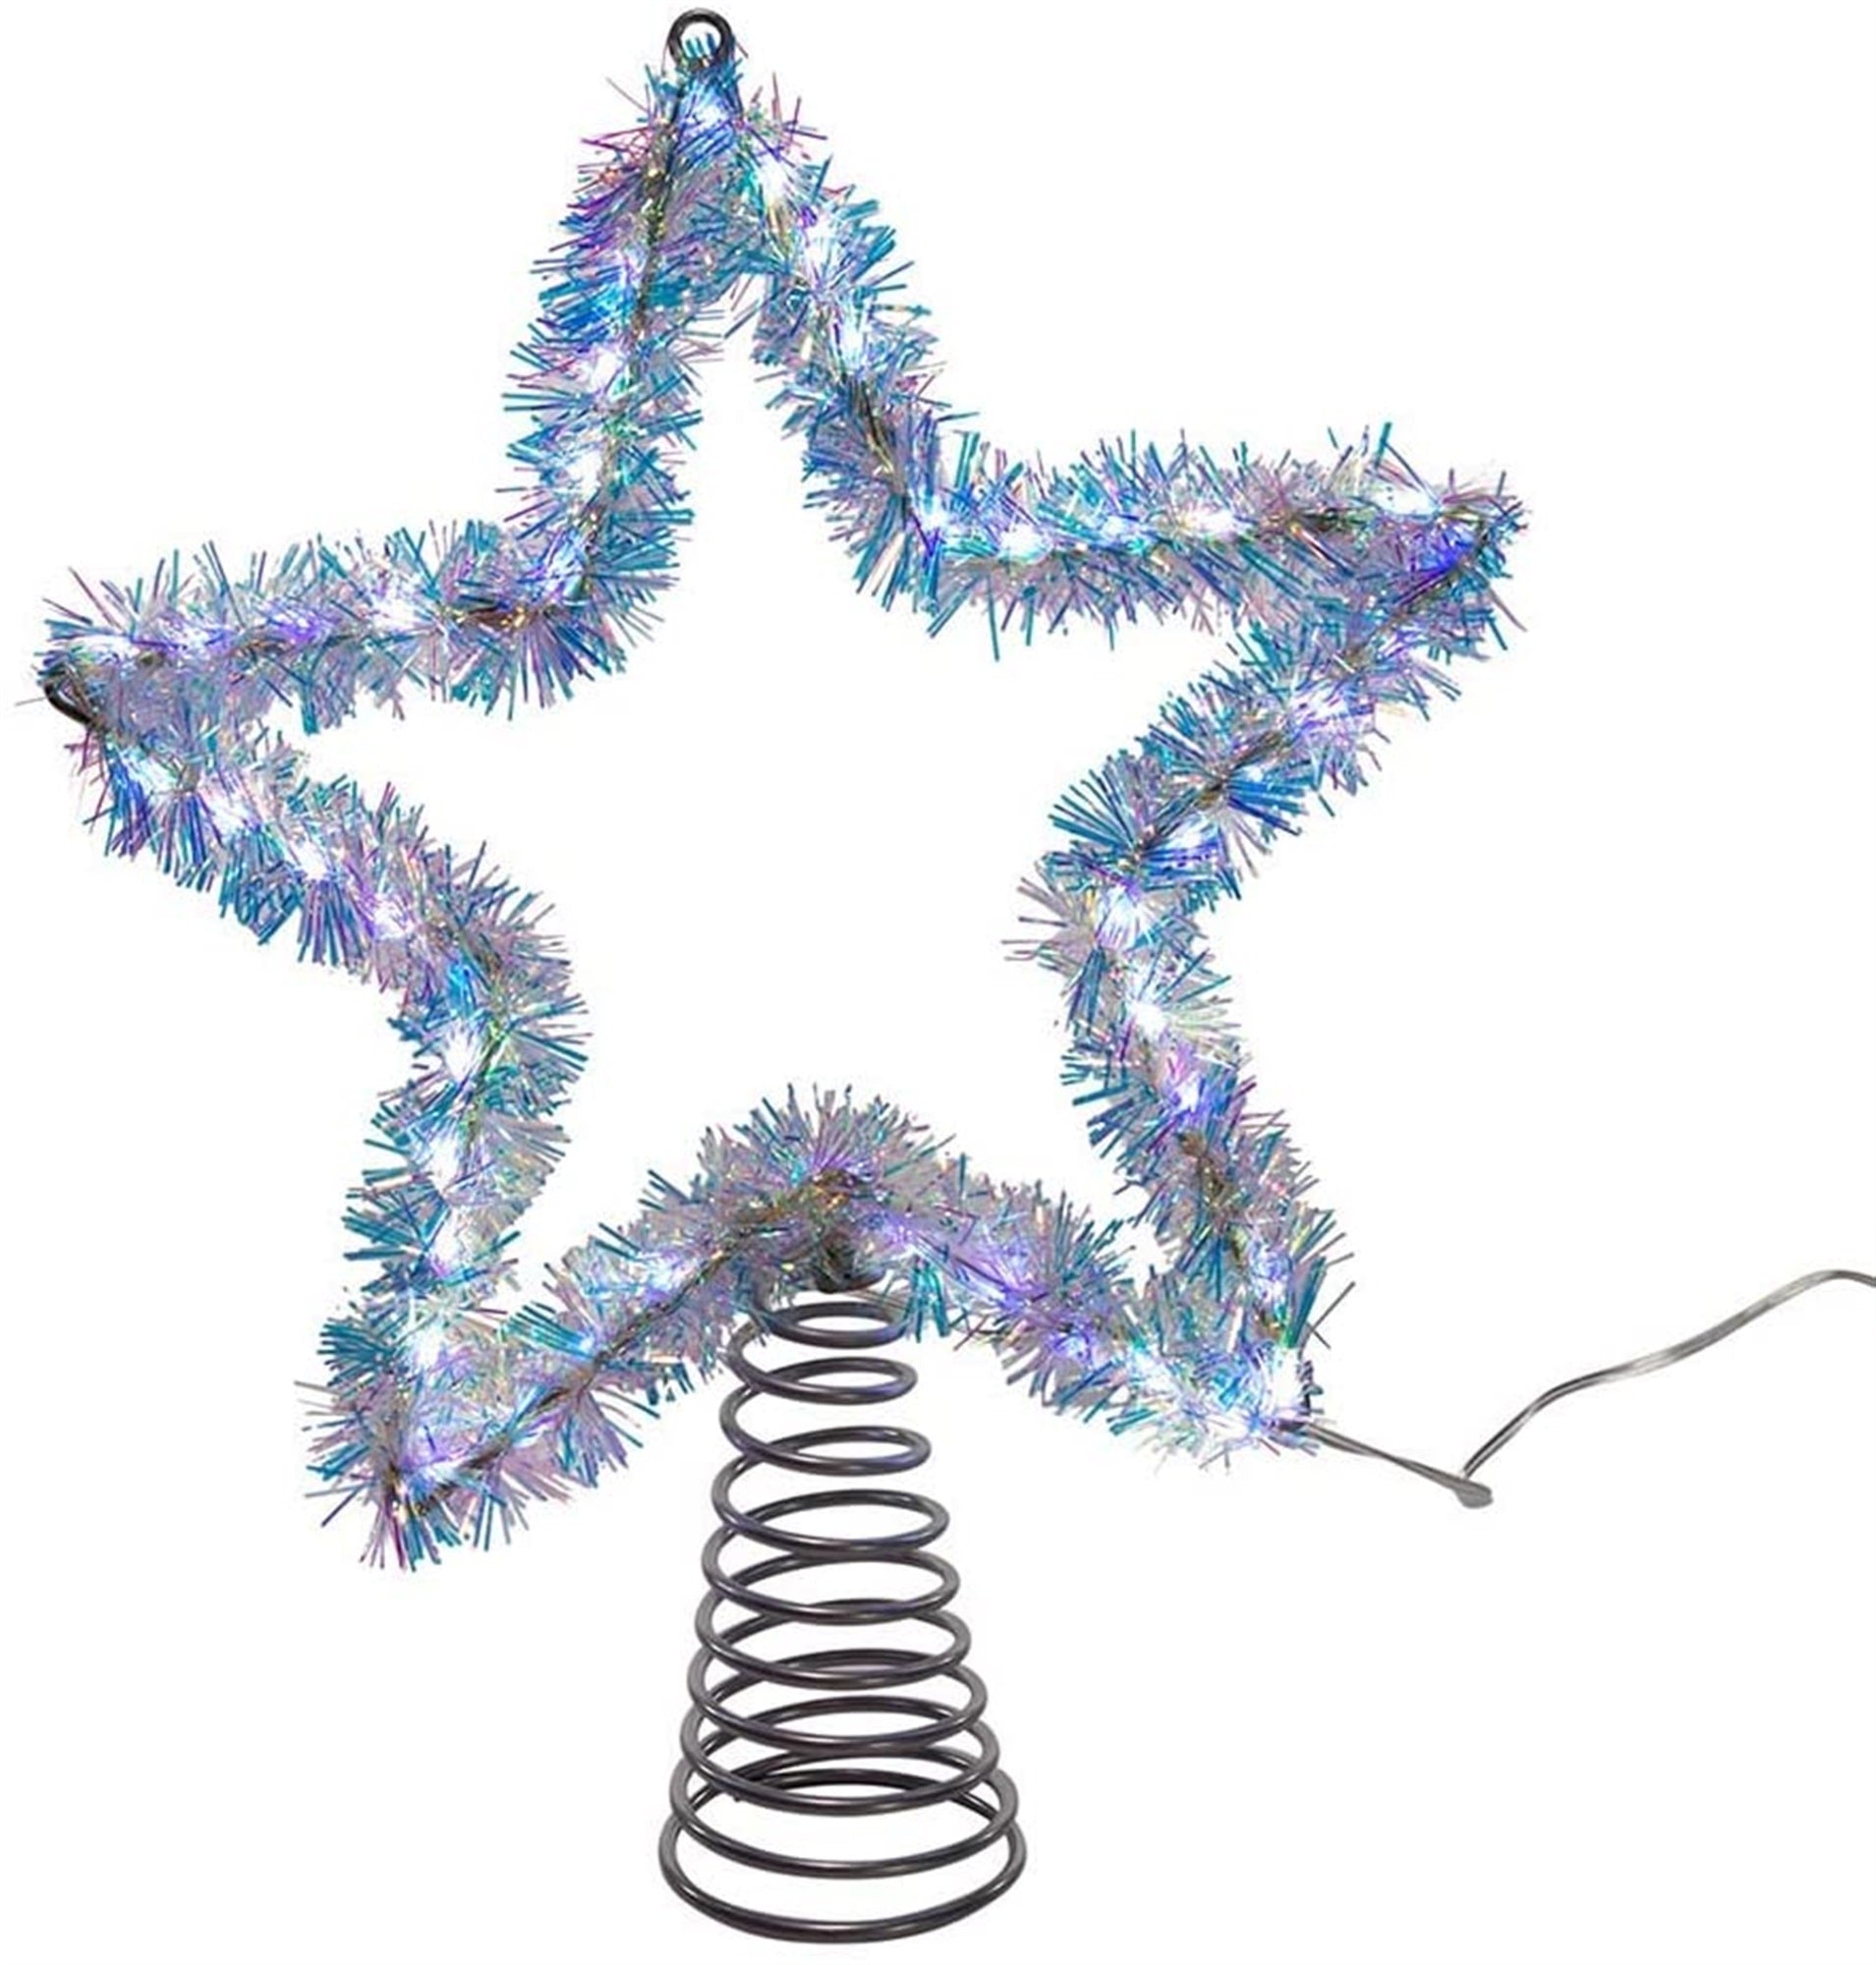 Kurt Adler String Light Star Christmas Tree Topper Set, Silver, 12"